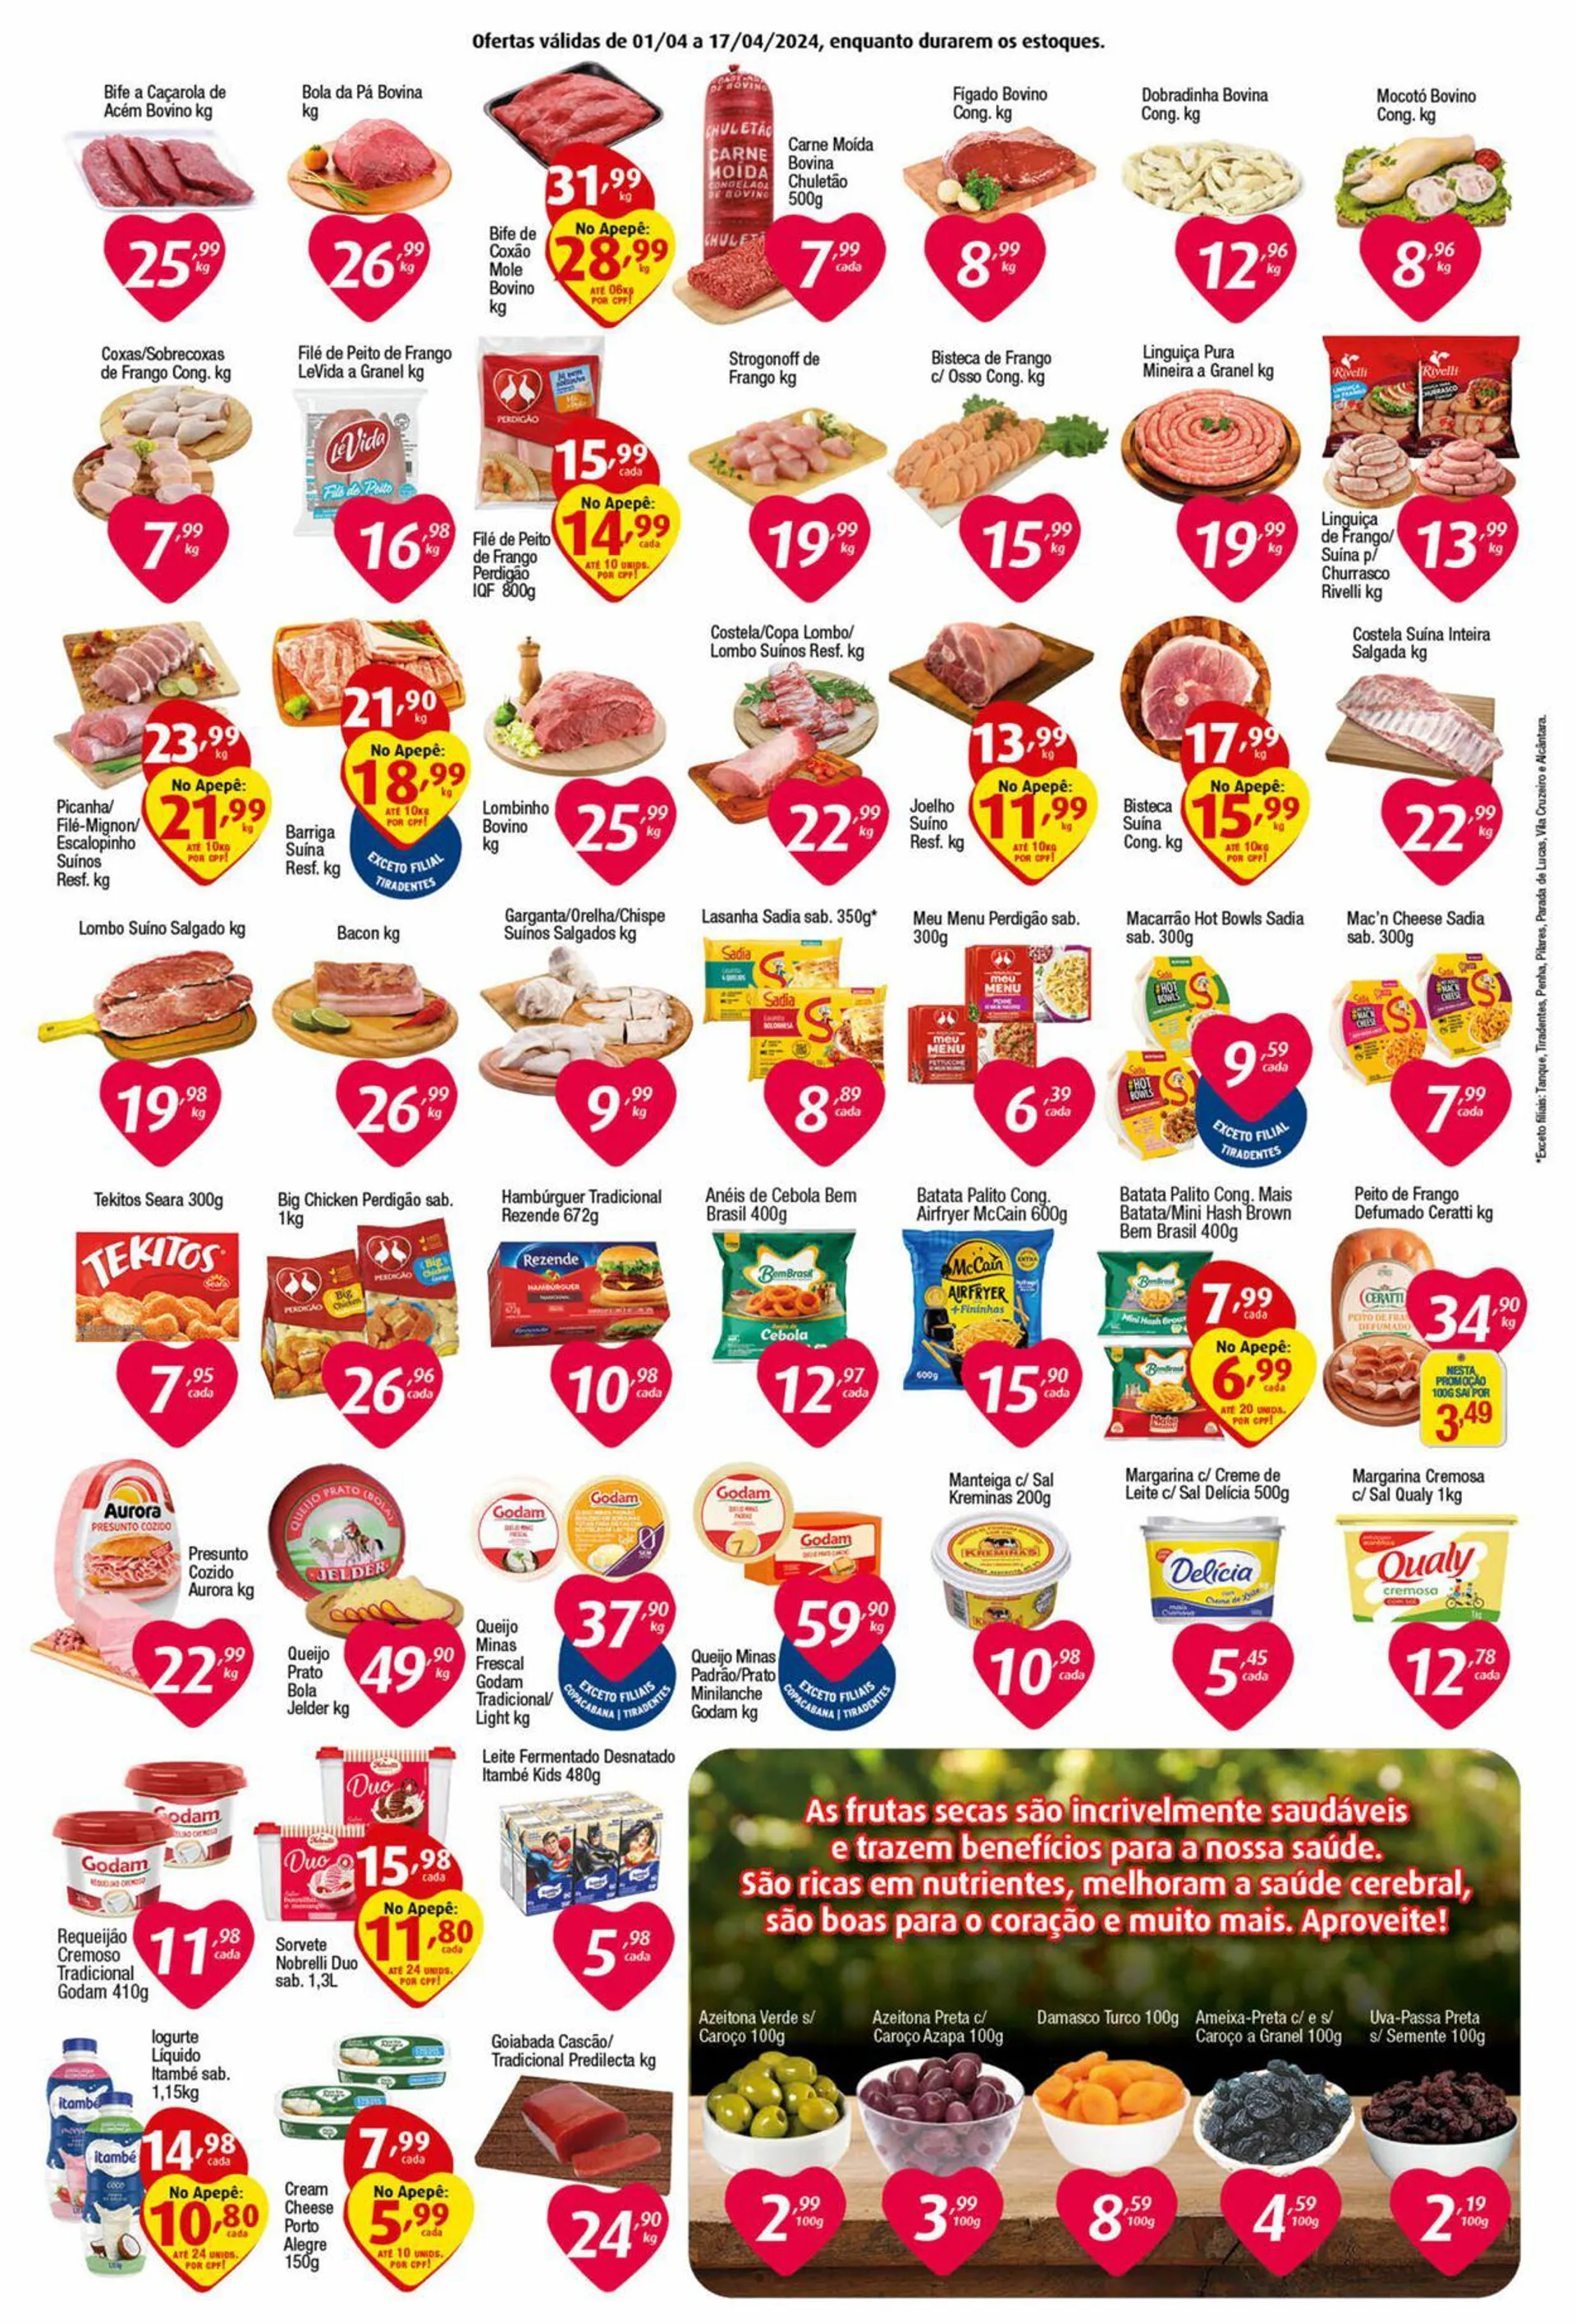 Encarte de Inter Supermercados 1 de abril até 17 de abril 2024 - Pagina 2